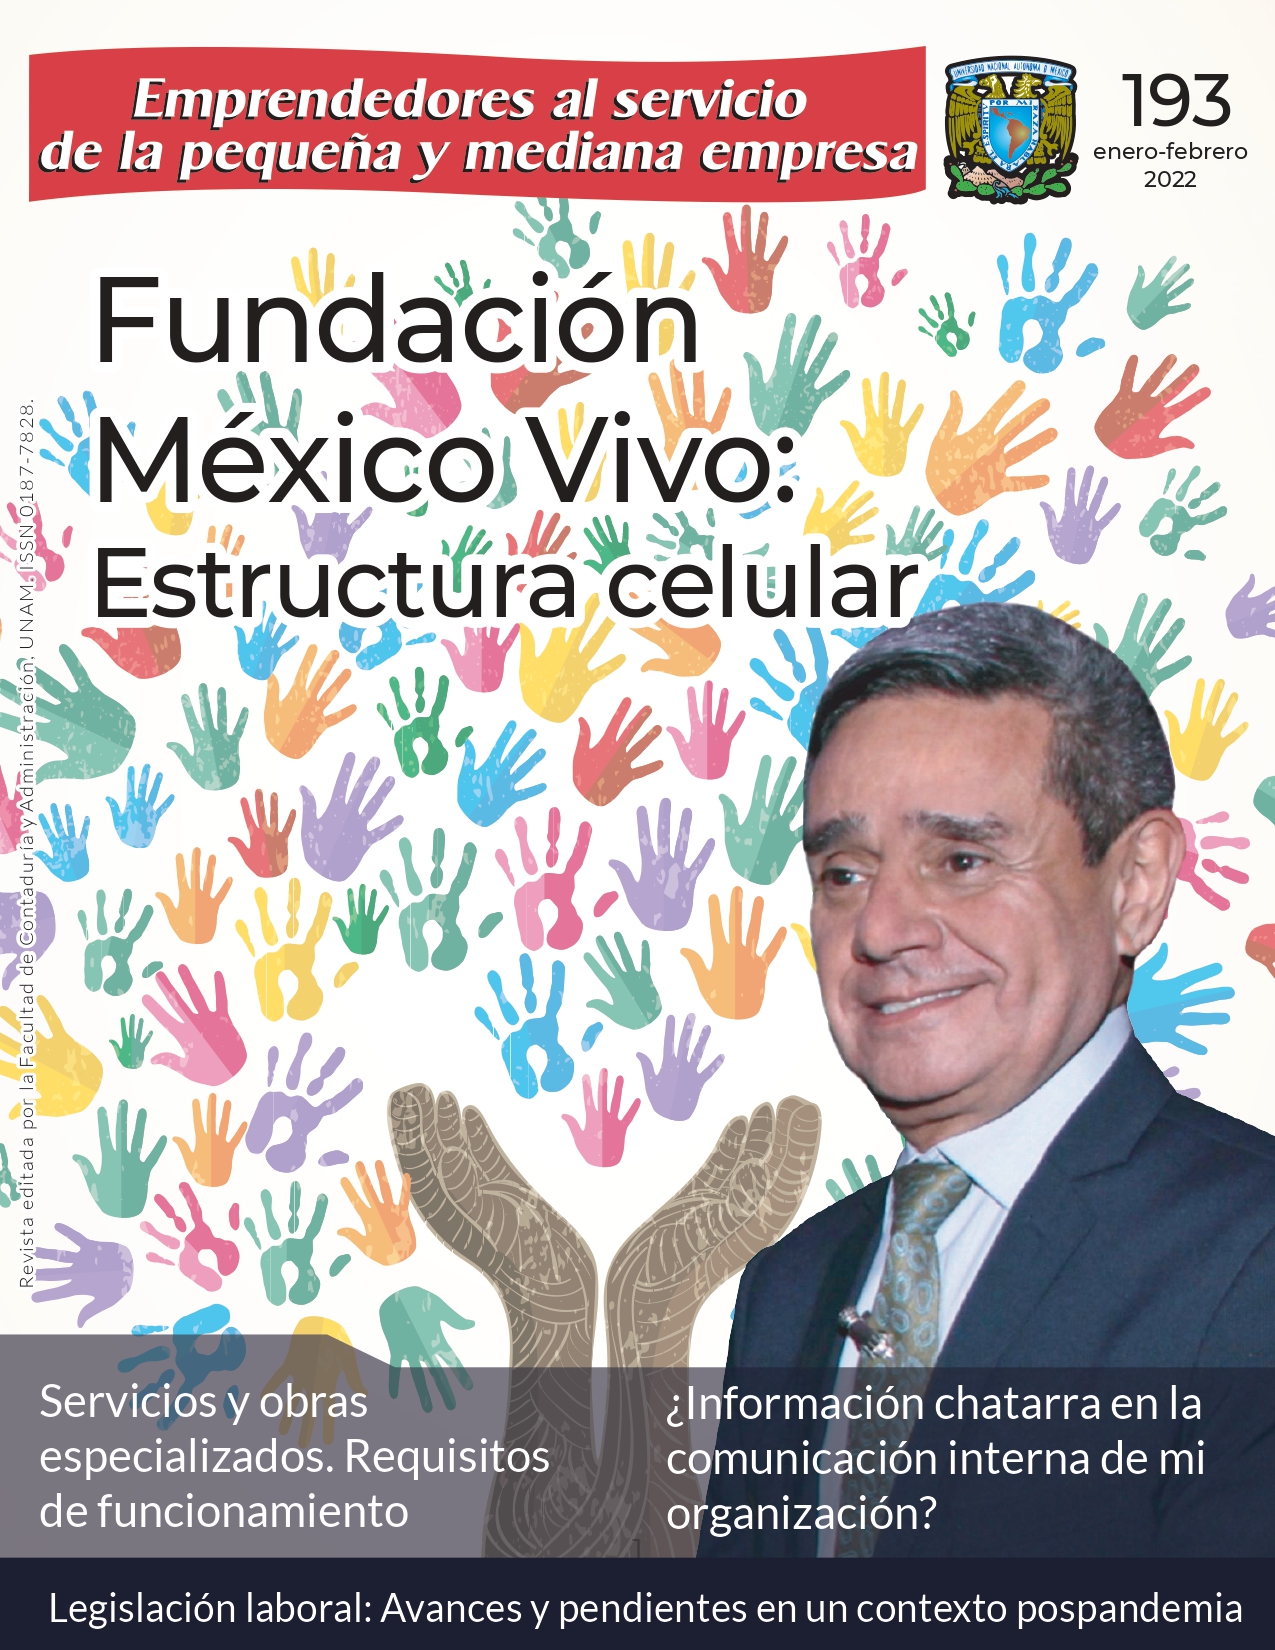 No.193 - Fundación México Vivo: Estructura celular